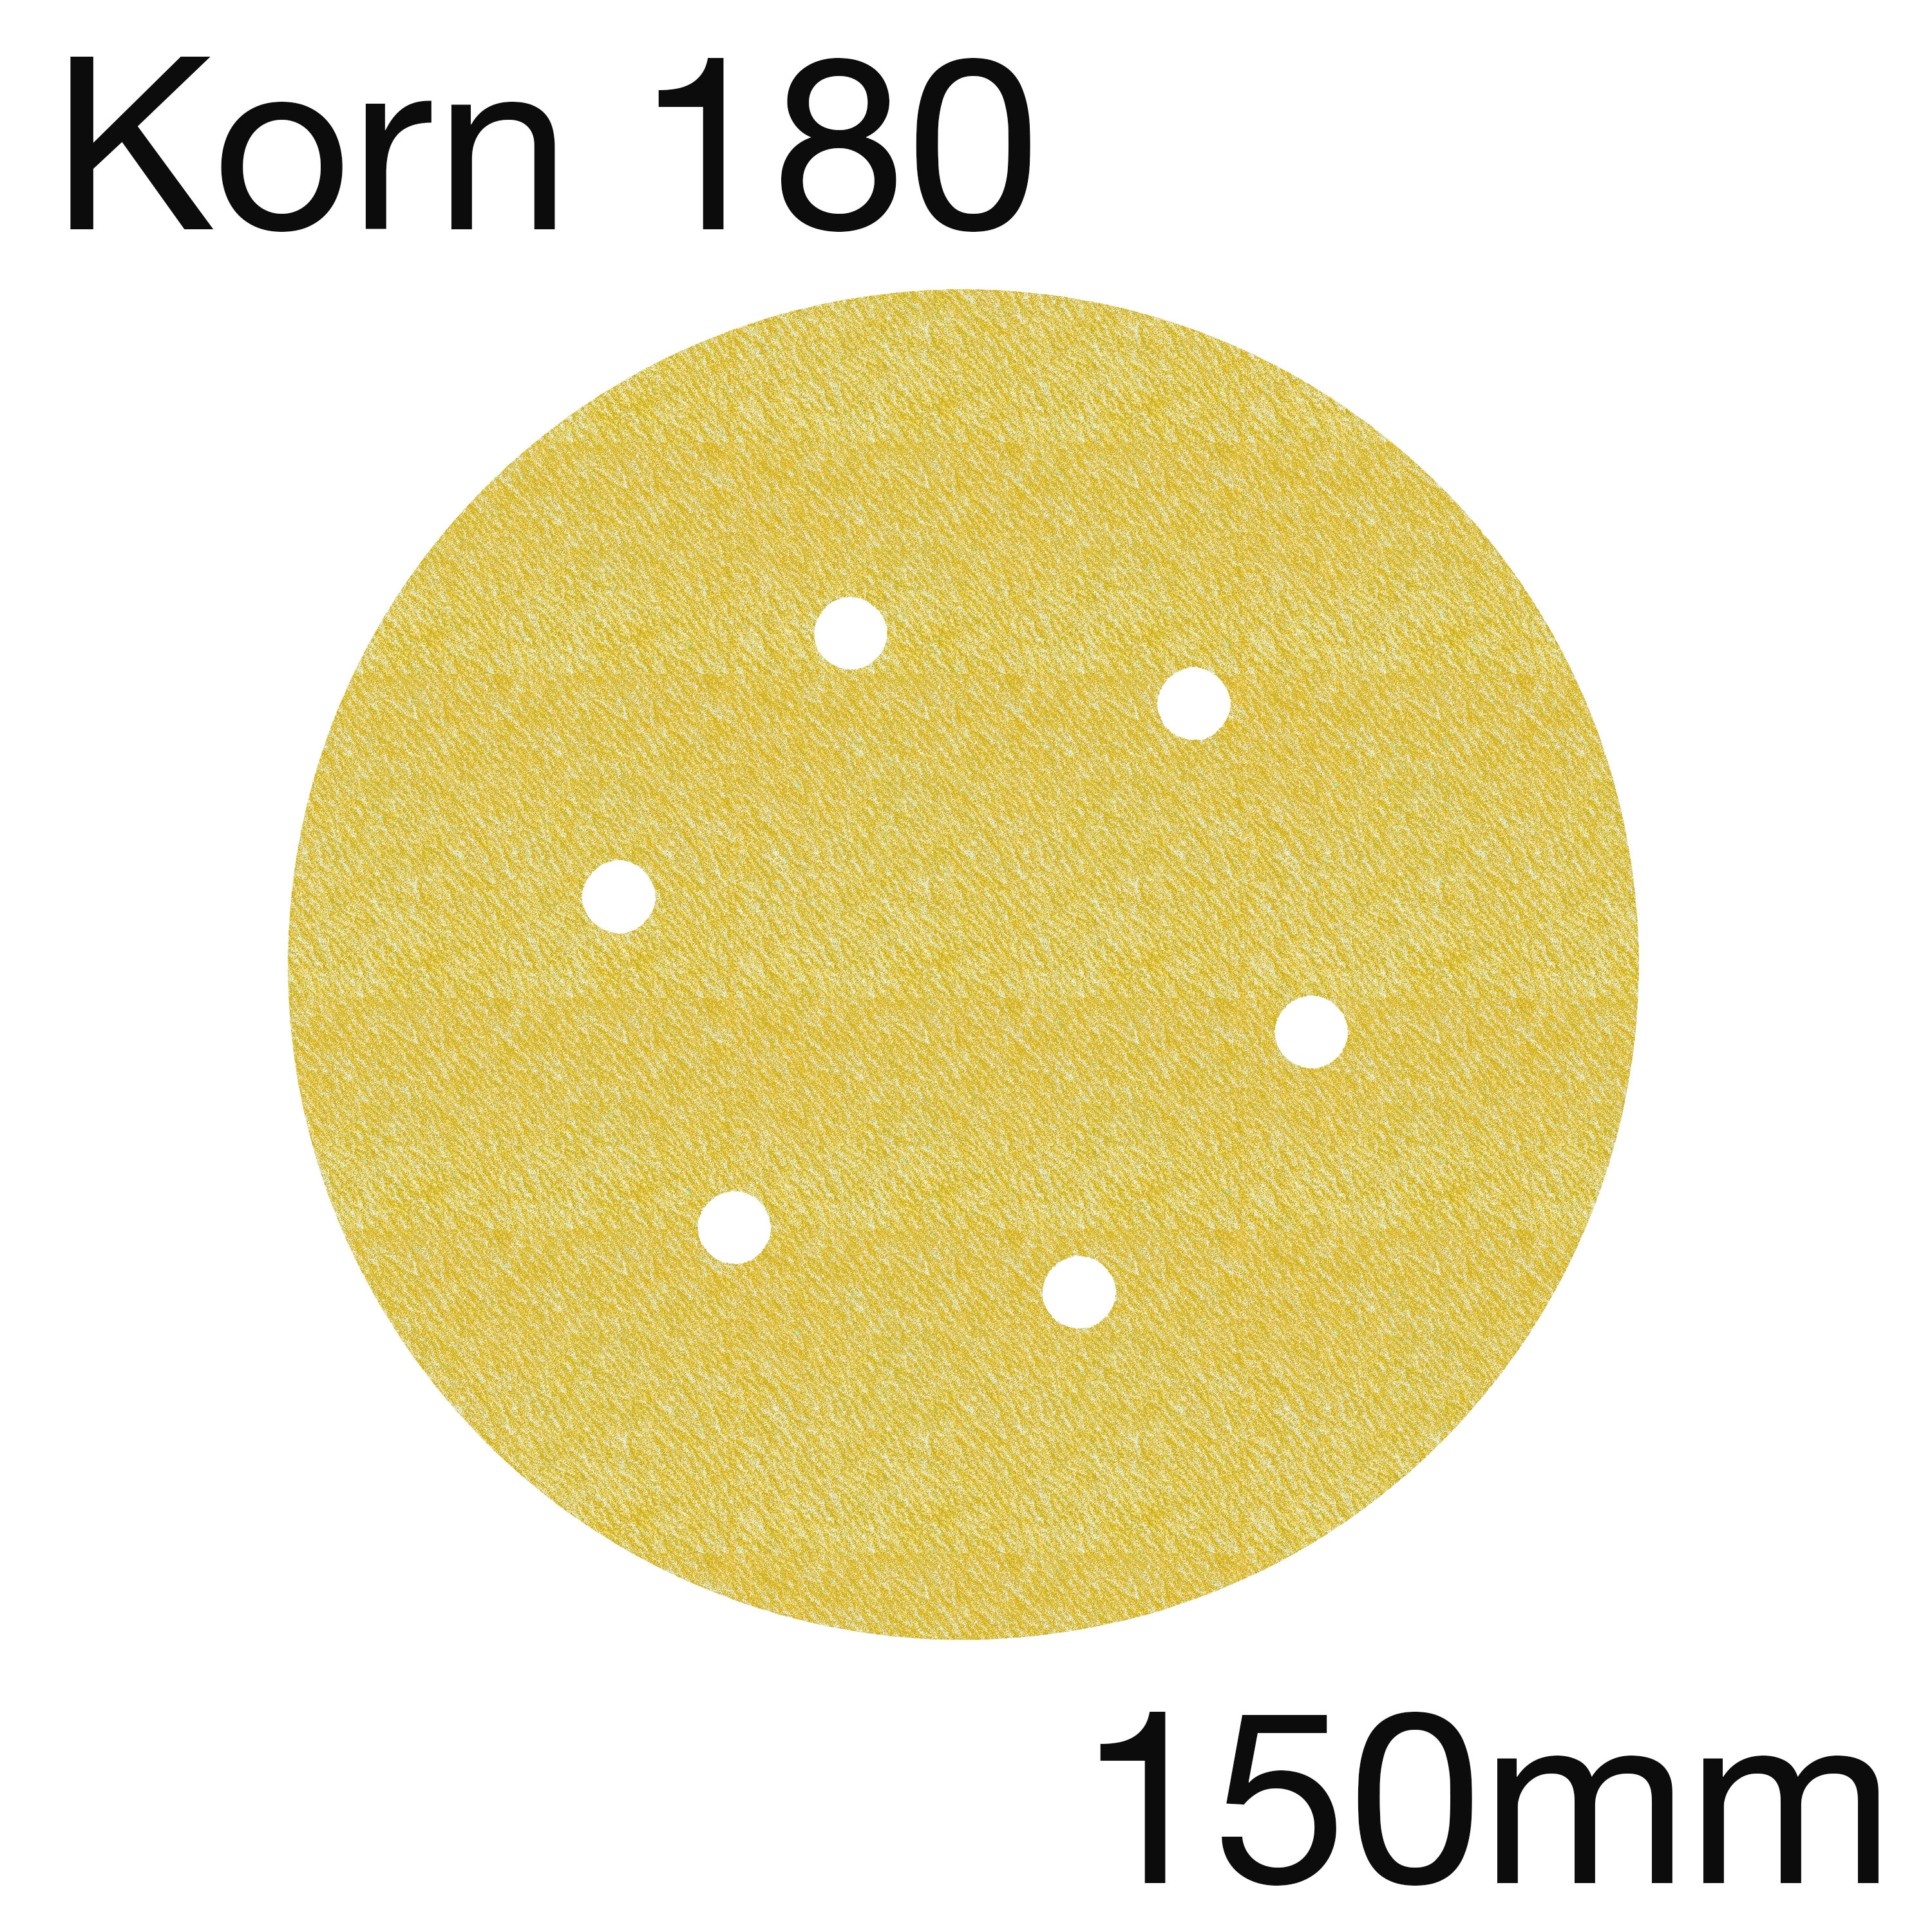 3M 255 63333 Hookit Papierschleifscheiben Gold, 6-Loch, Korn 180, 150mm, Pack mit 100 Stk